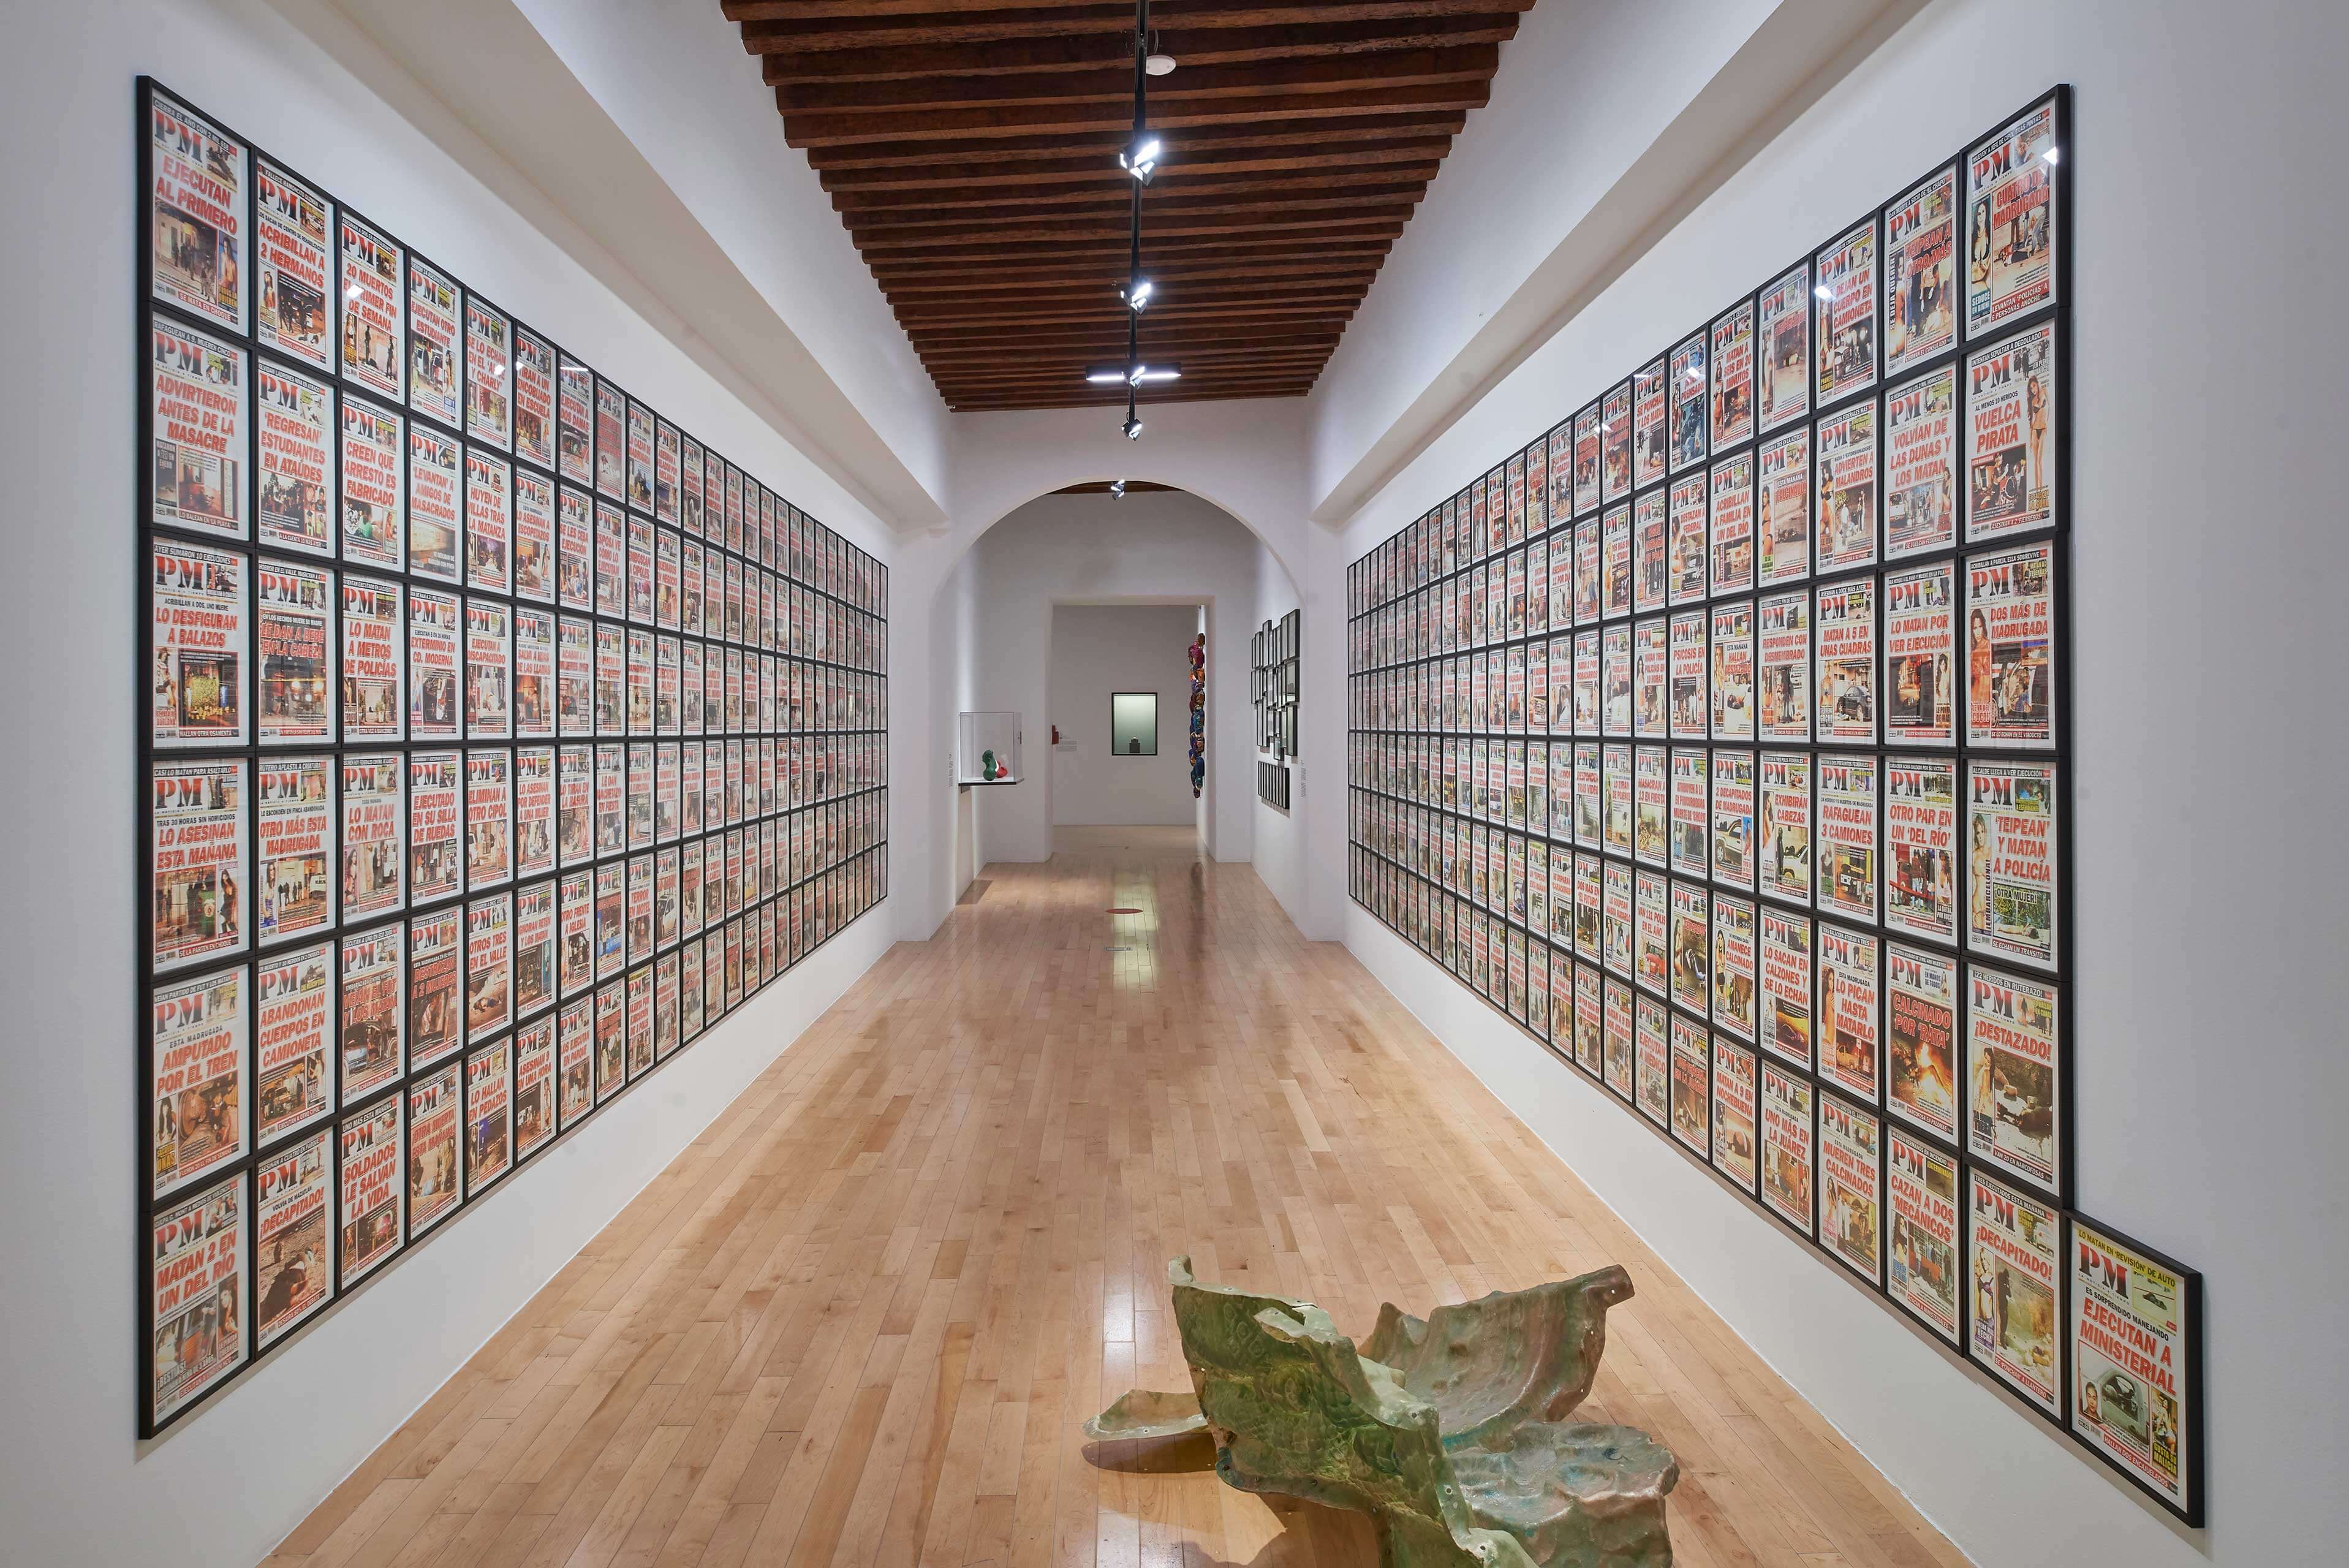 PM 2010 | El tiempo en las cosas. Salas de Arte Contemporáneo | Museo Amparo, Puebla